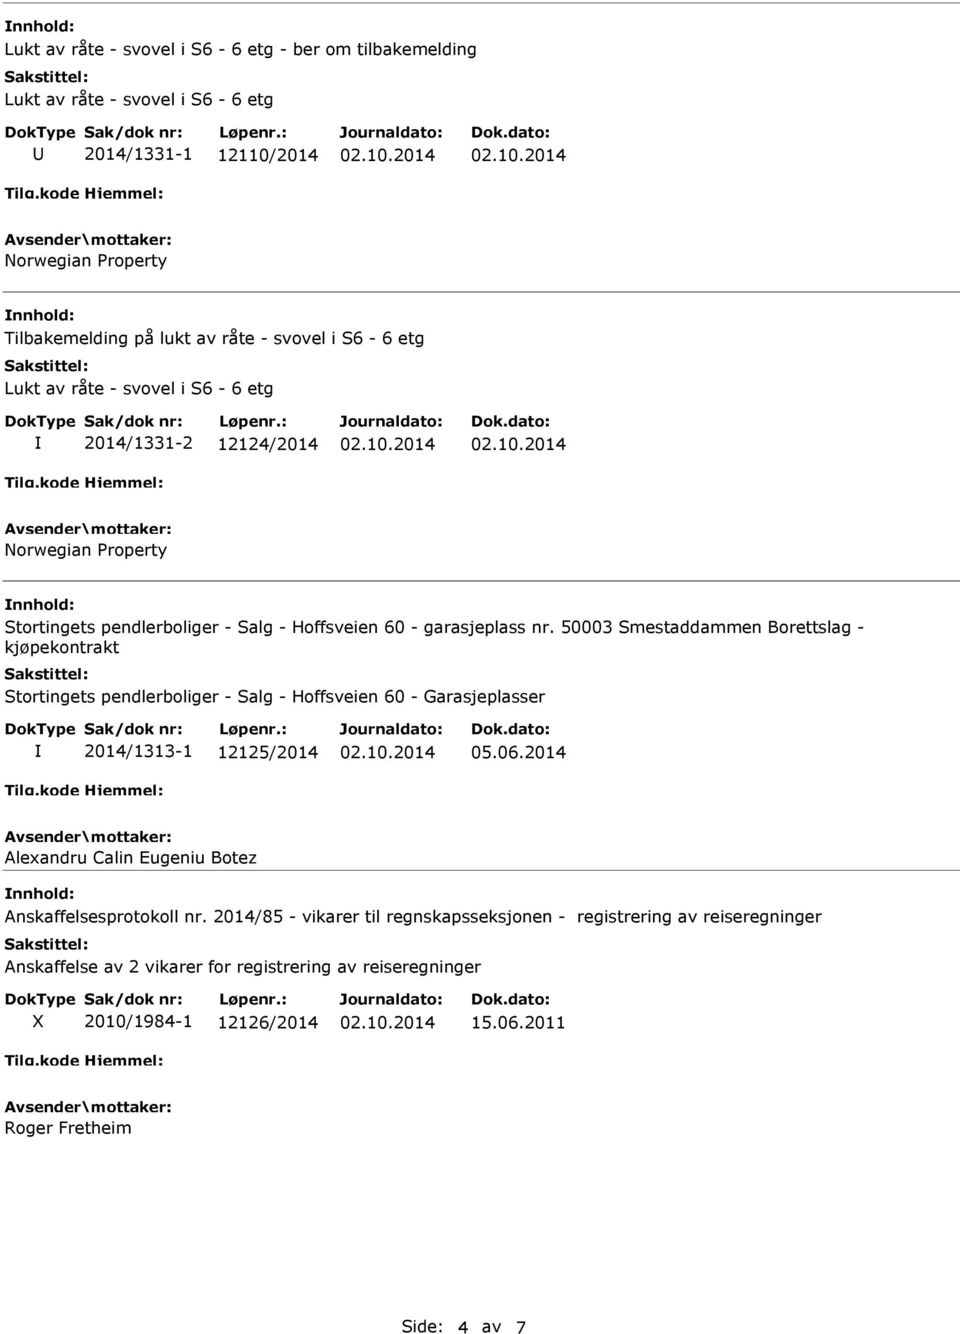 50003 Smestaddammen Borettslag - kjøpekontrakt Stortingets pendlerboliger - Salg - Hoffsveien 60 - Garasjeplasser 2014/1313-1 12125/2014 05.06.